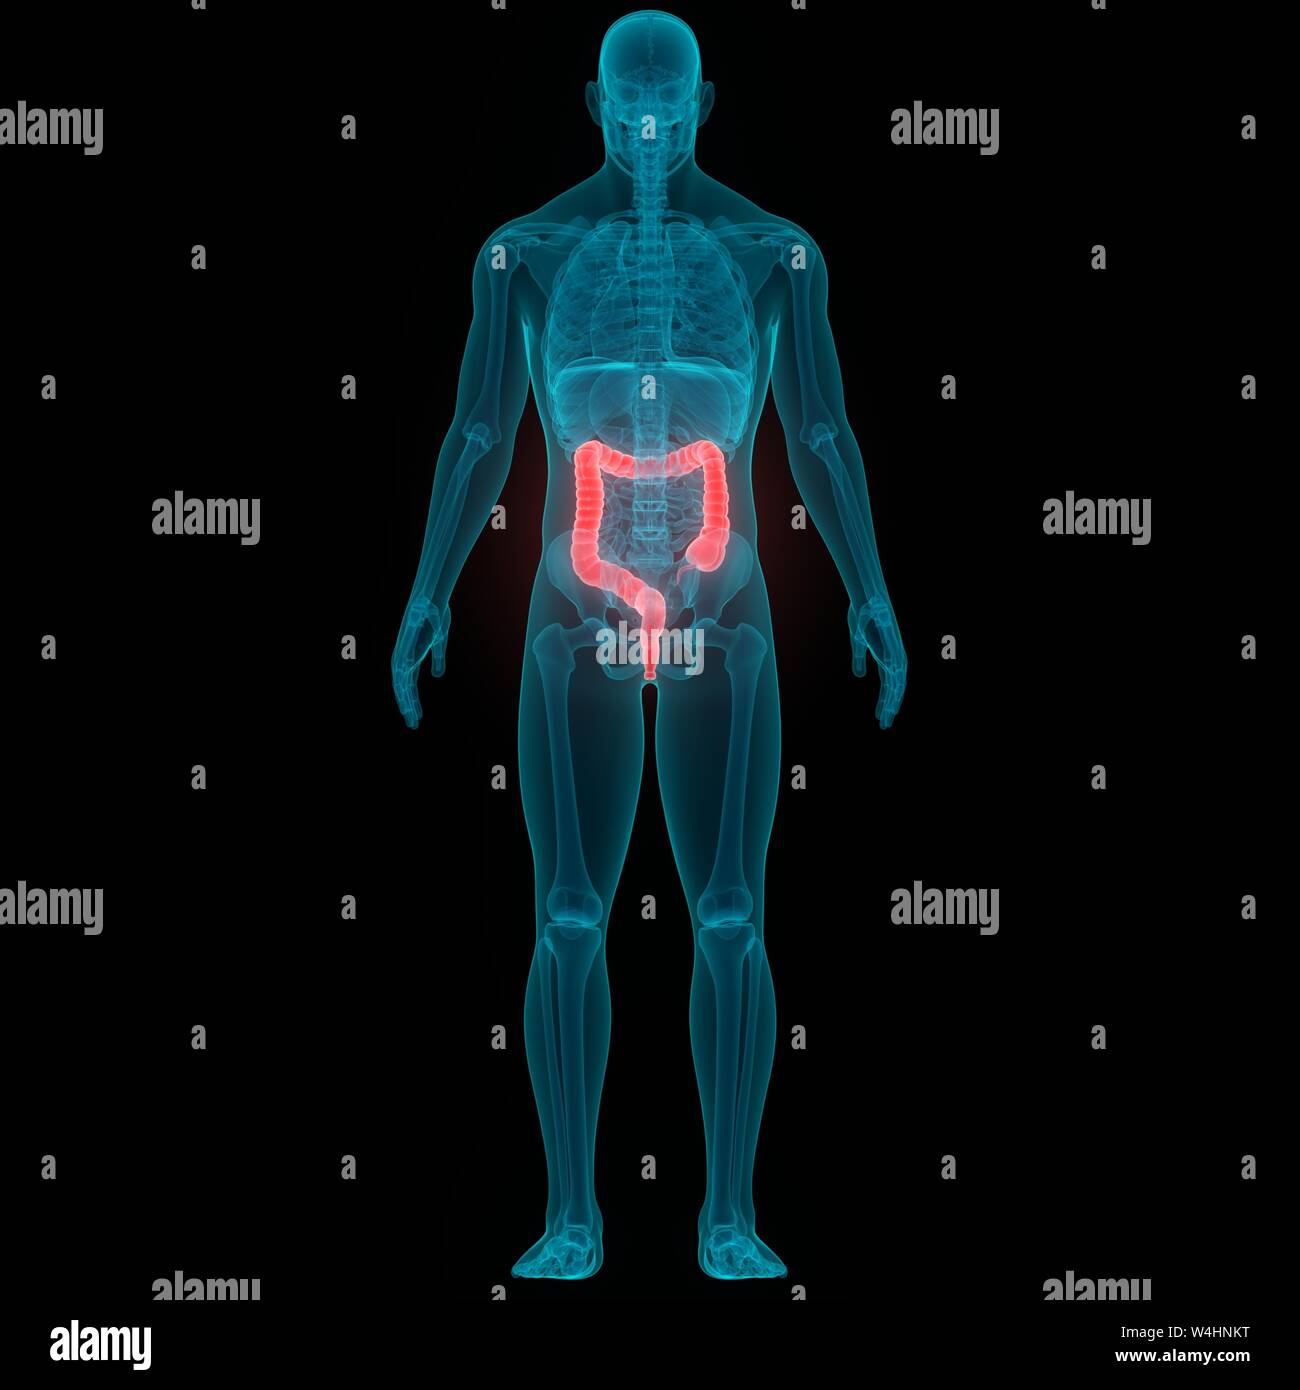 Aparato Digestivo Humano Anatomía Del Intestino Delgado Fotografía De Stock Alamy 6662